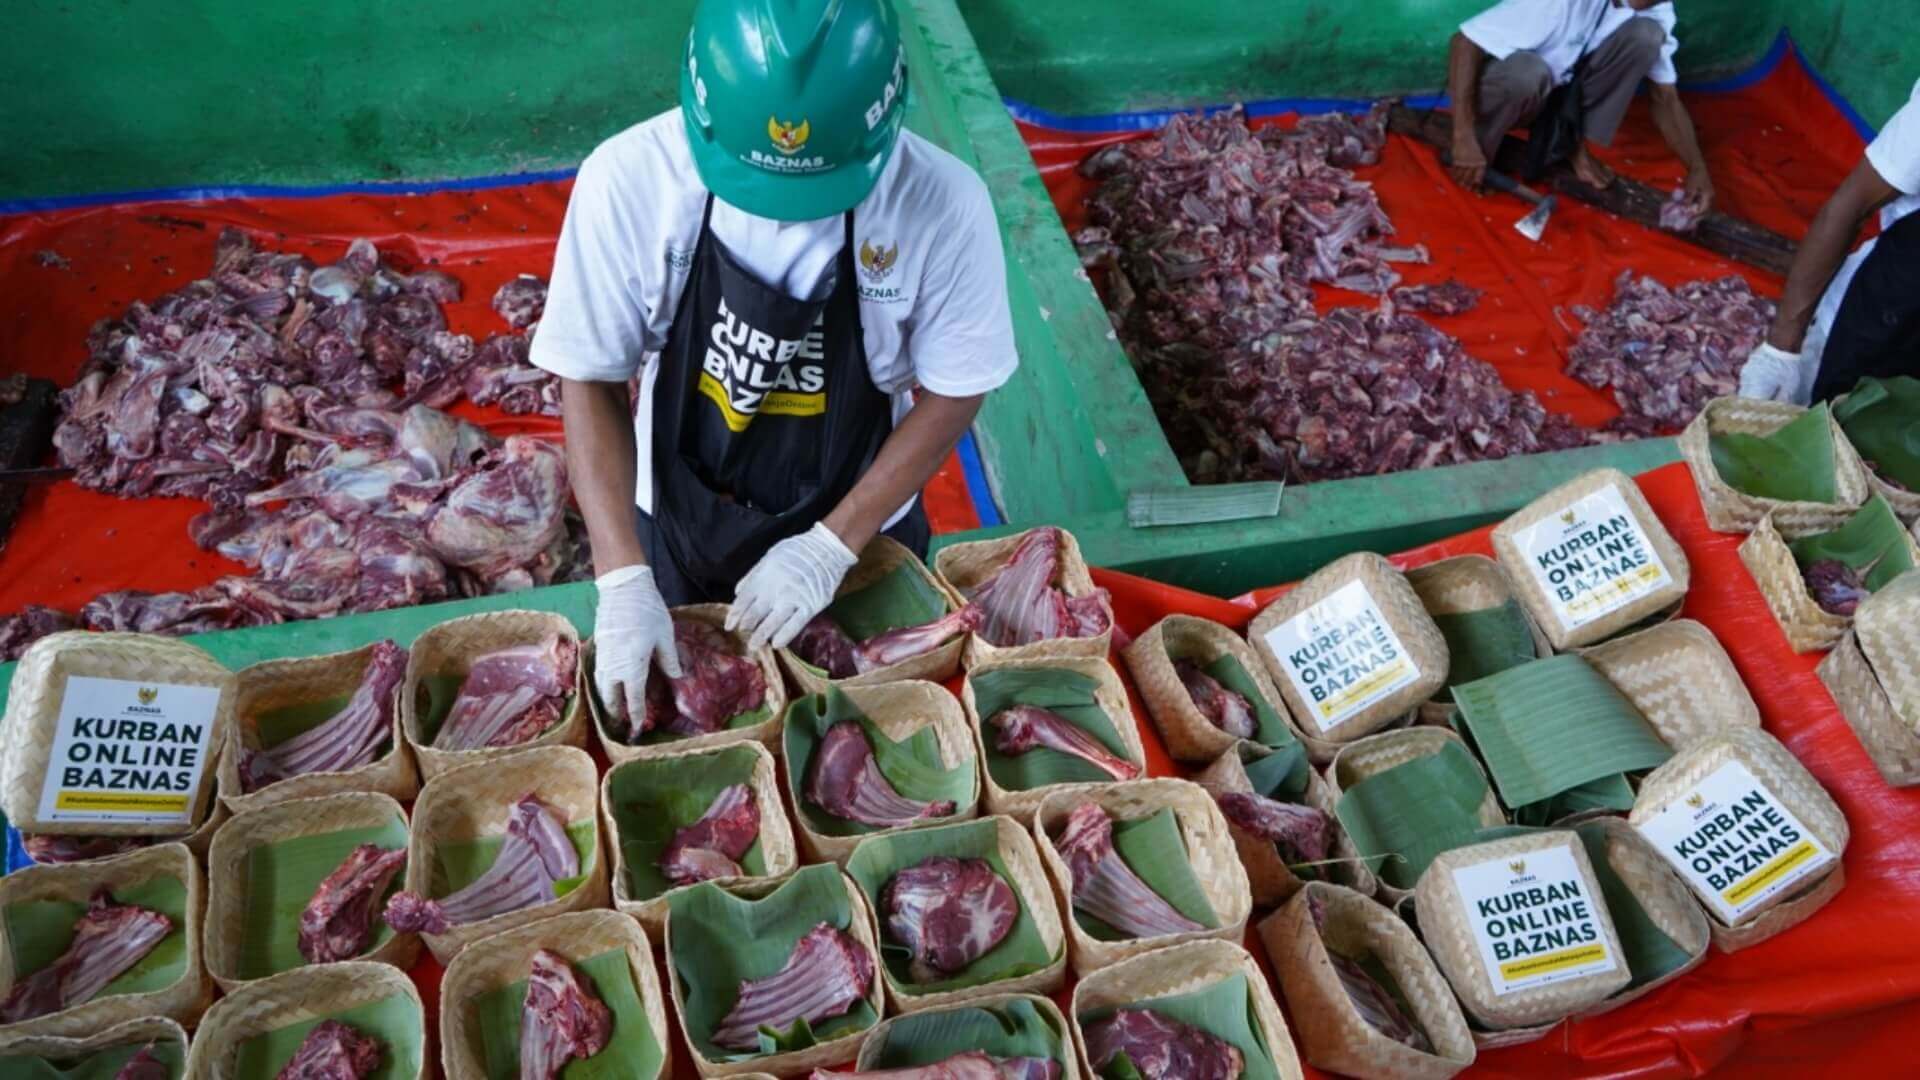 Kurban Online BAZNAS Salurkan Daging ke 229 Desa di Indonesia